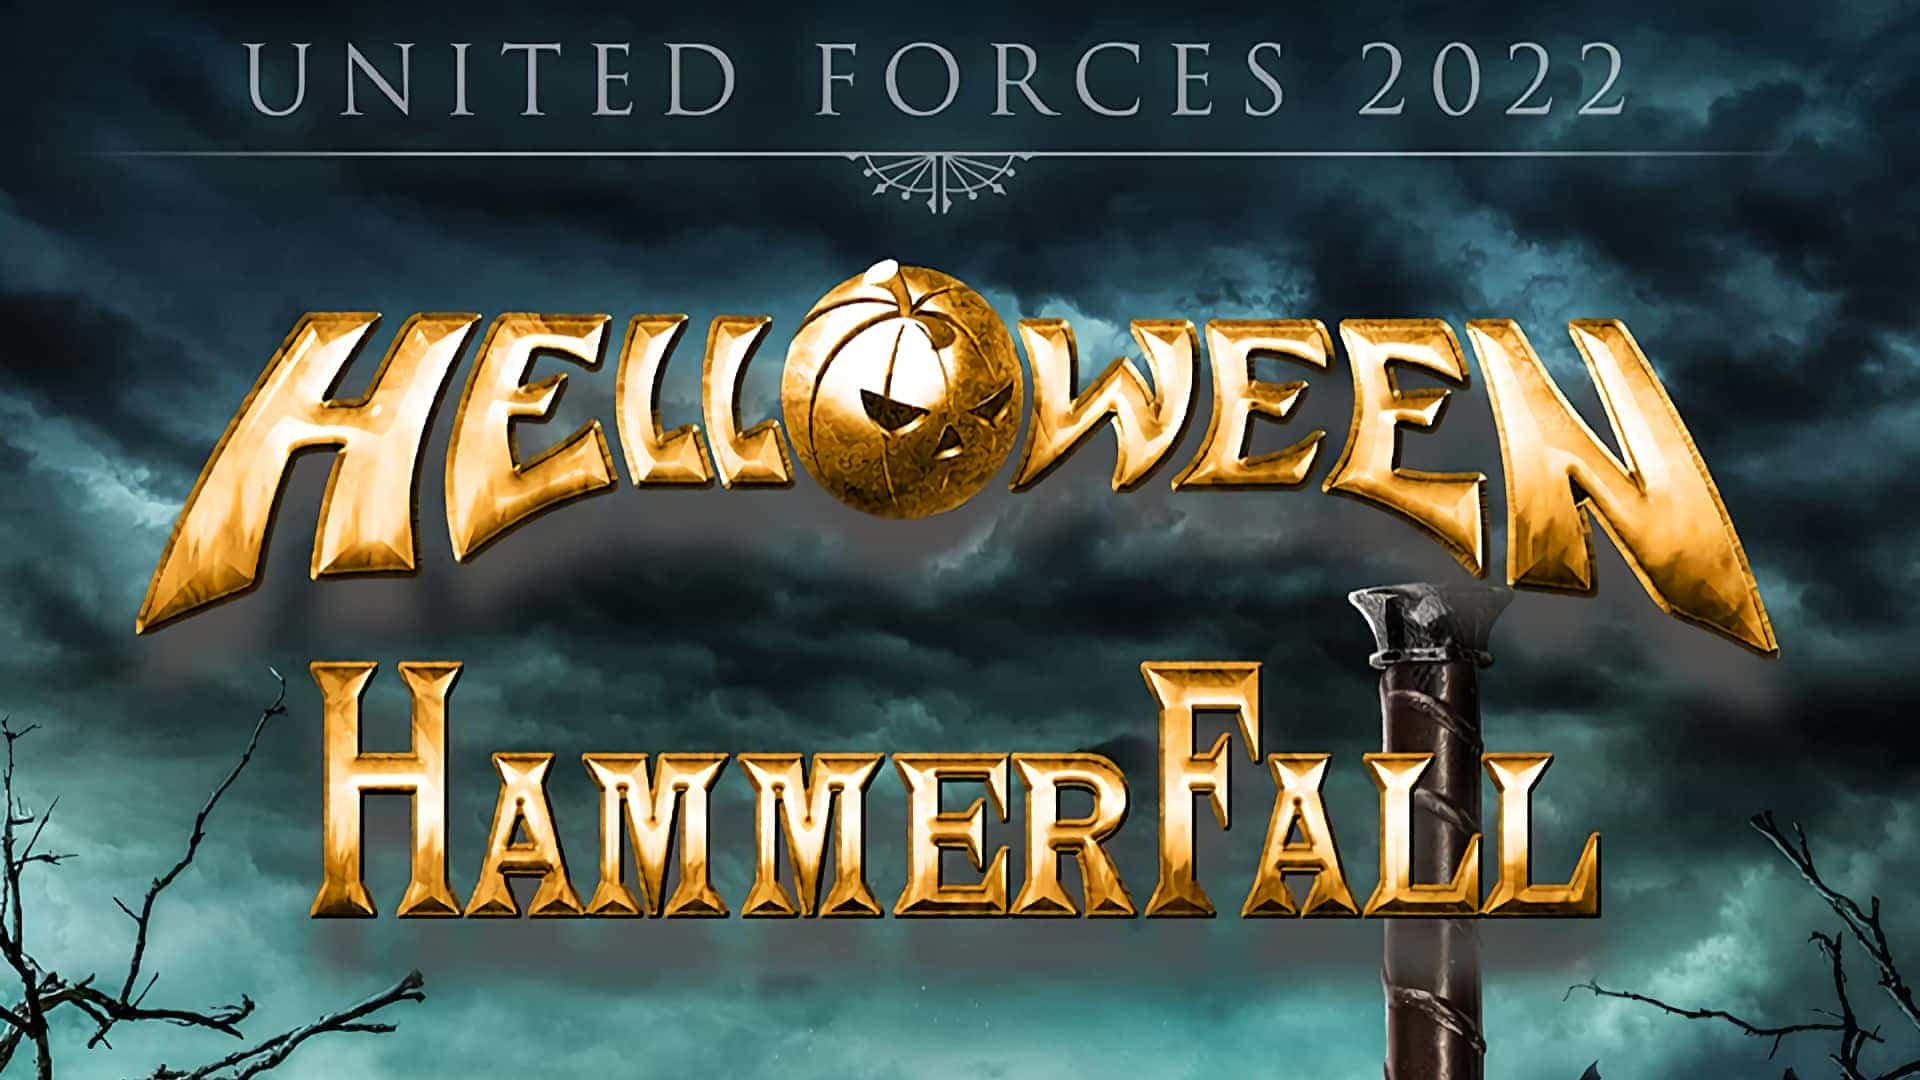 Helloween + HammerFall